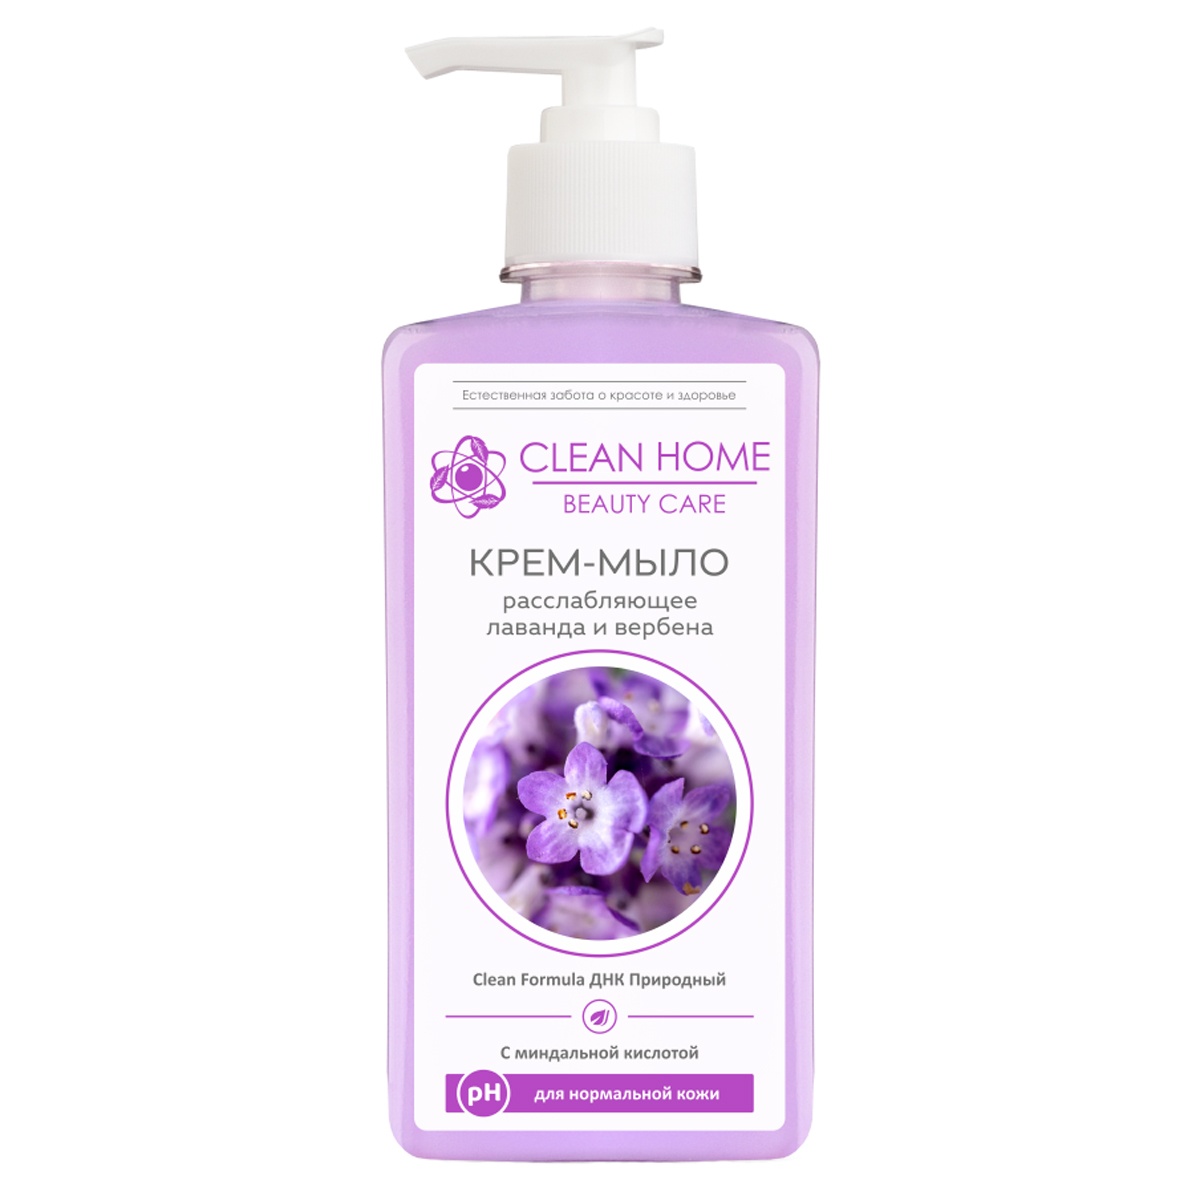 Крем-мыло для рук Clean Home Beauty Care Расслабляющее anti acne крем тинт с эффектом сияния тон светлый 30г